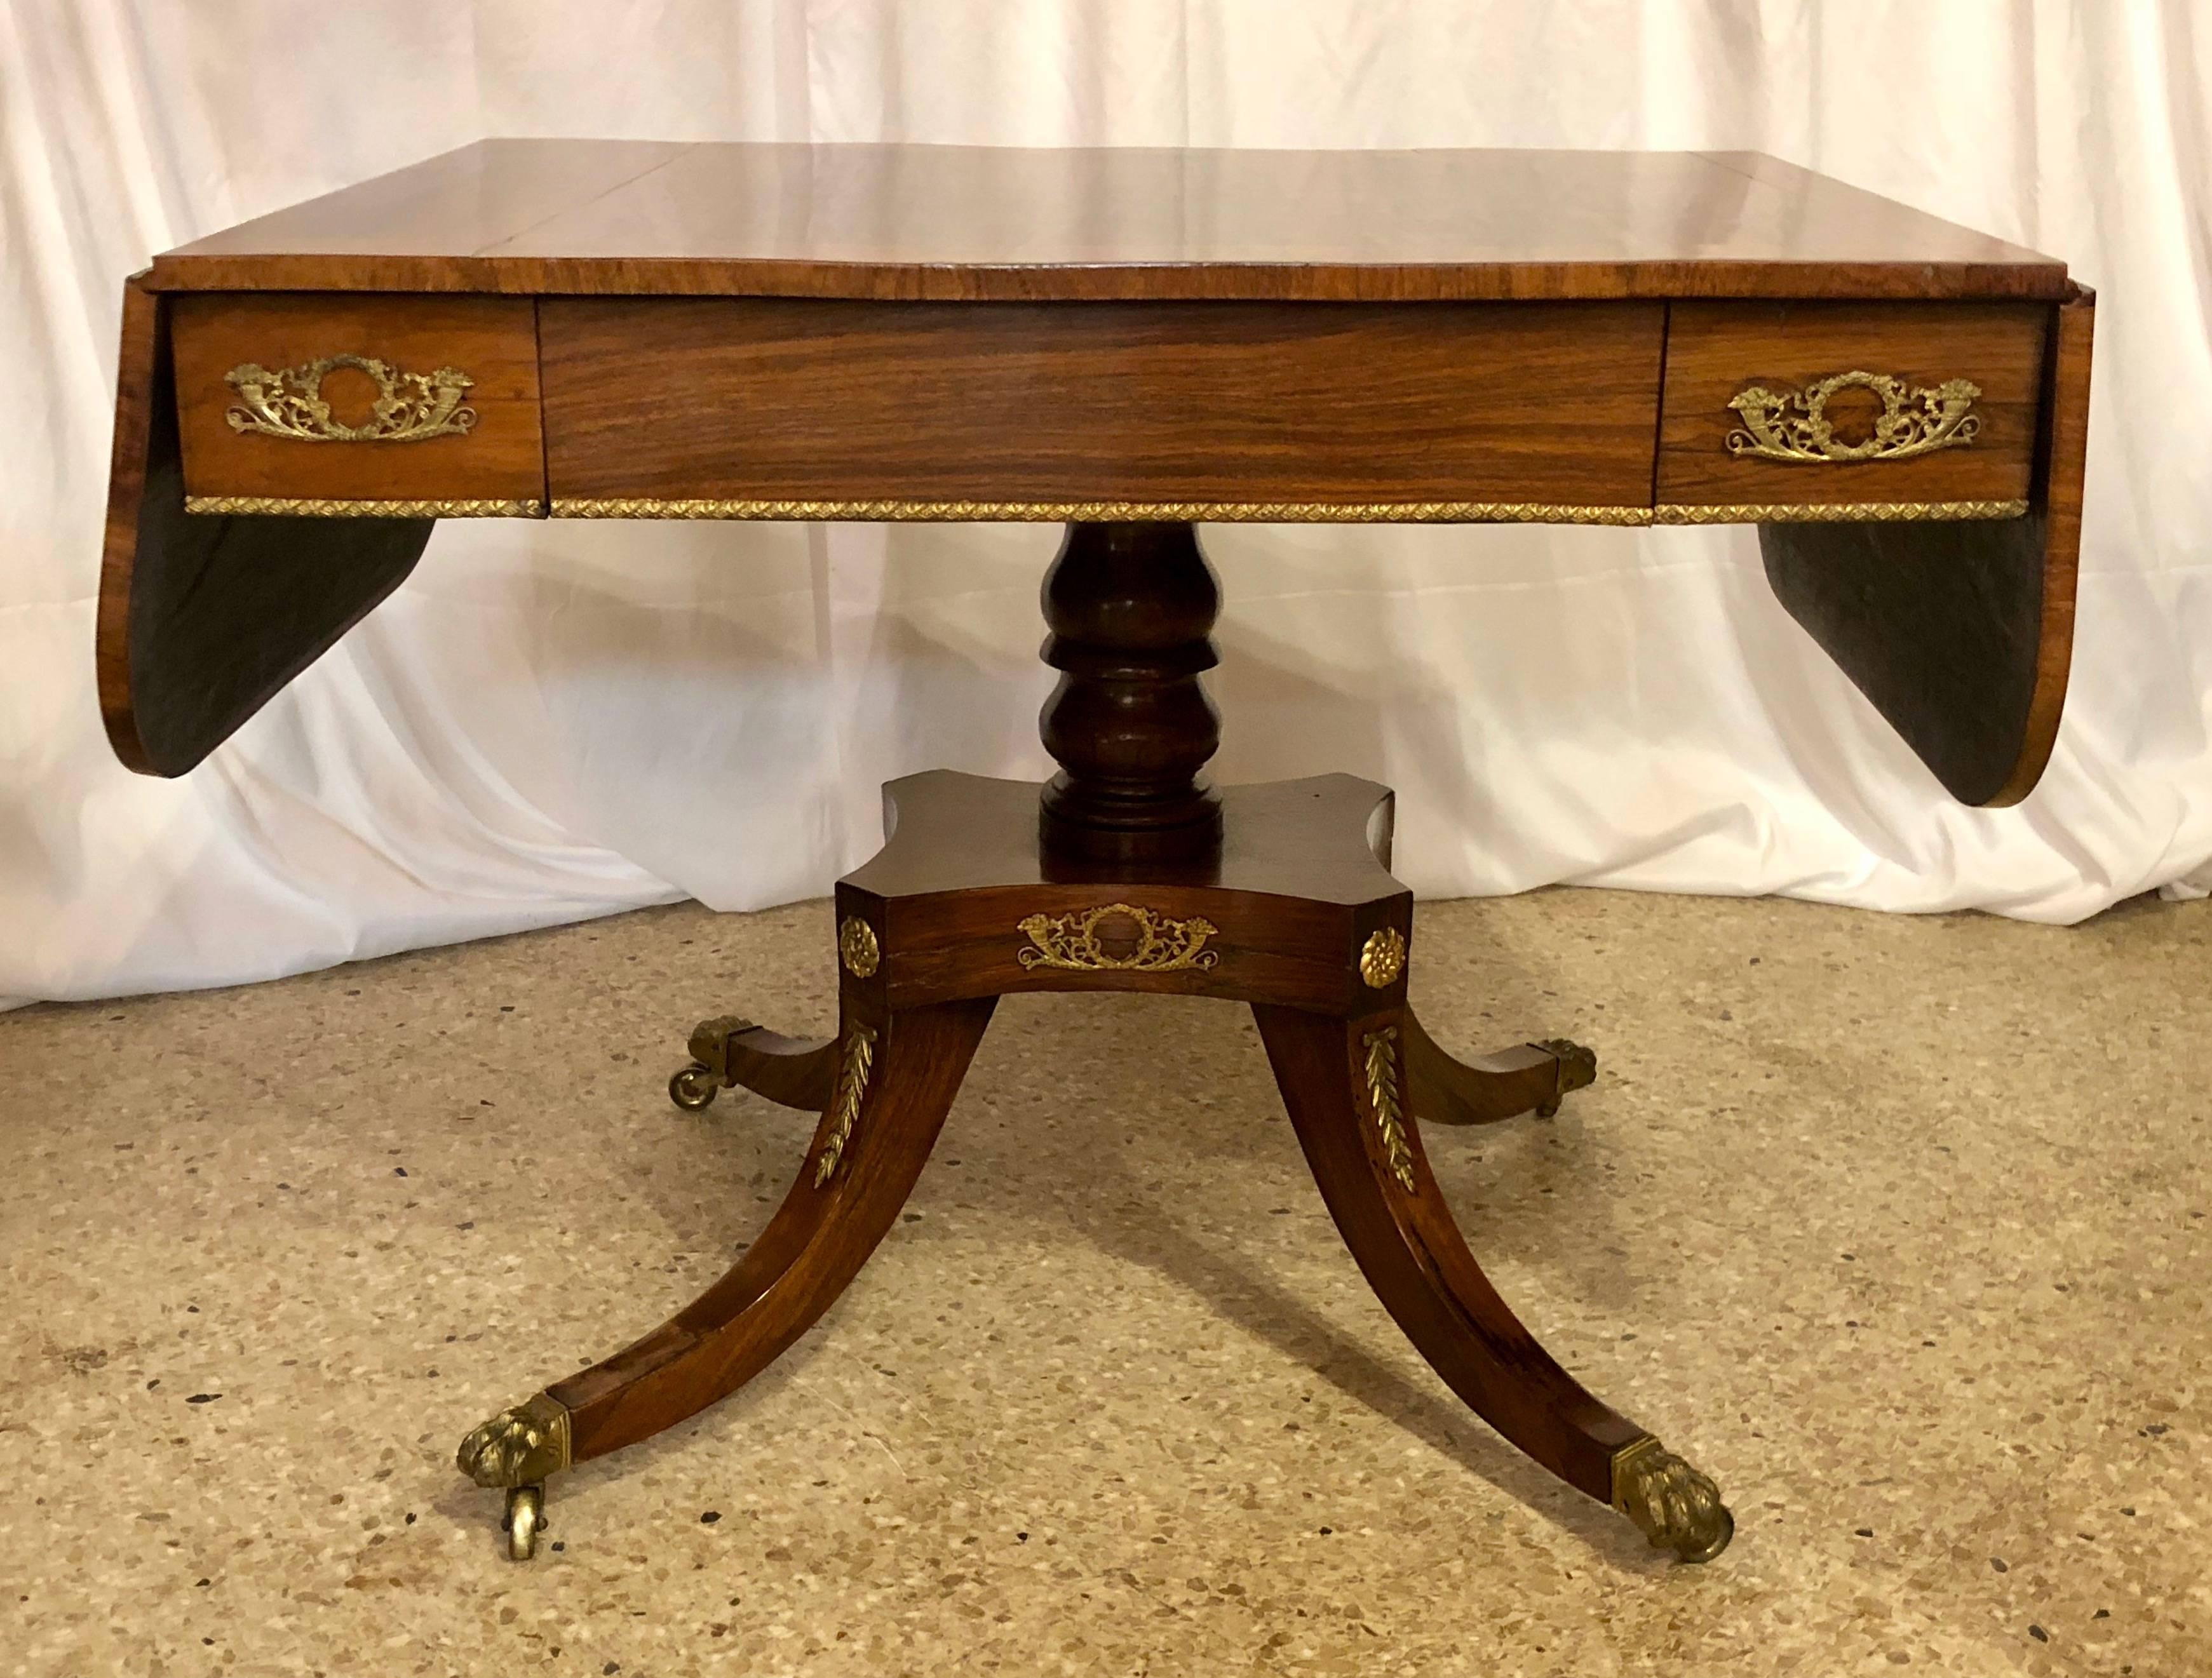 Antiker Regency-Sofatisch aus Palisanderholz mit Verzierungen aus Satinholz, um 1830-1840. Dieser hübsche Tisch wäre eine wunderbare Ergänzung für jedes Haus. Rosenholz ist ein wunderschönes Holz.